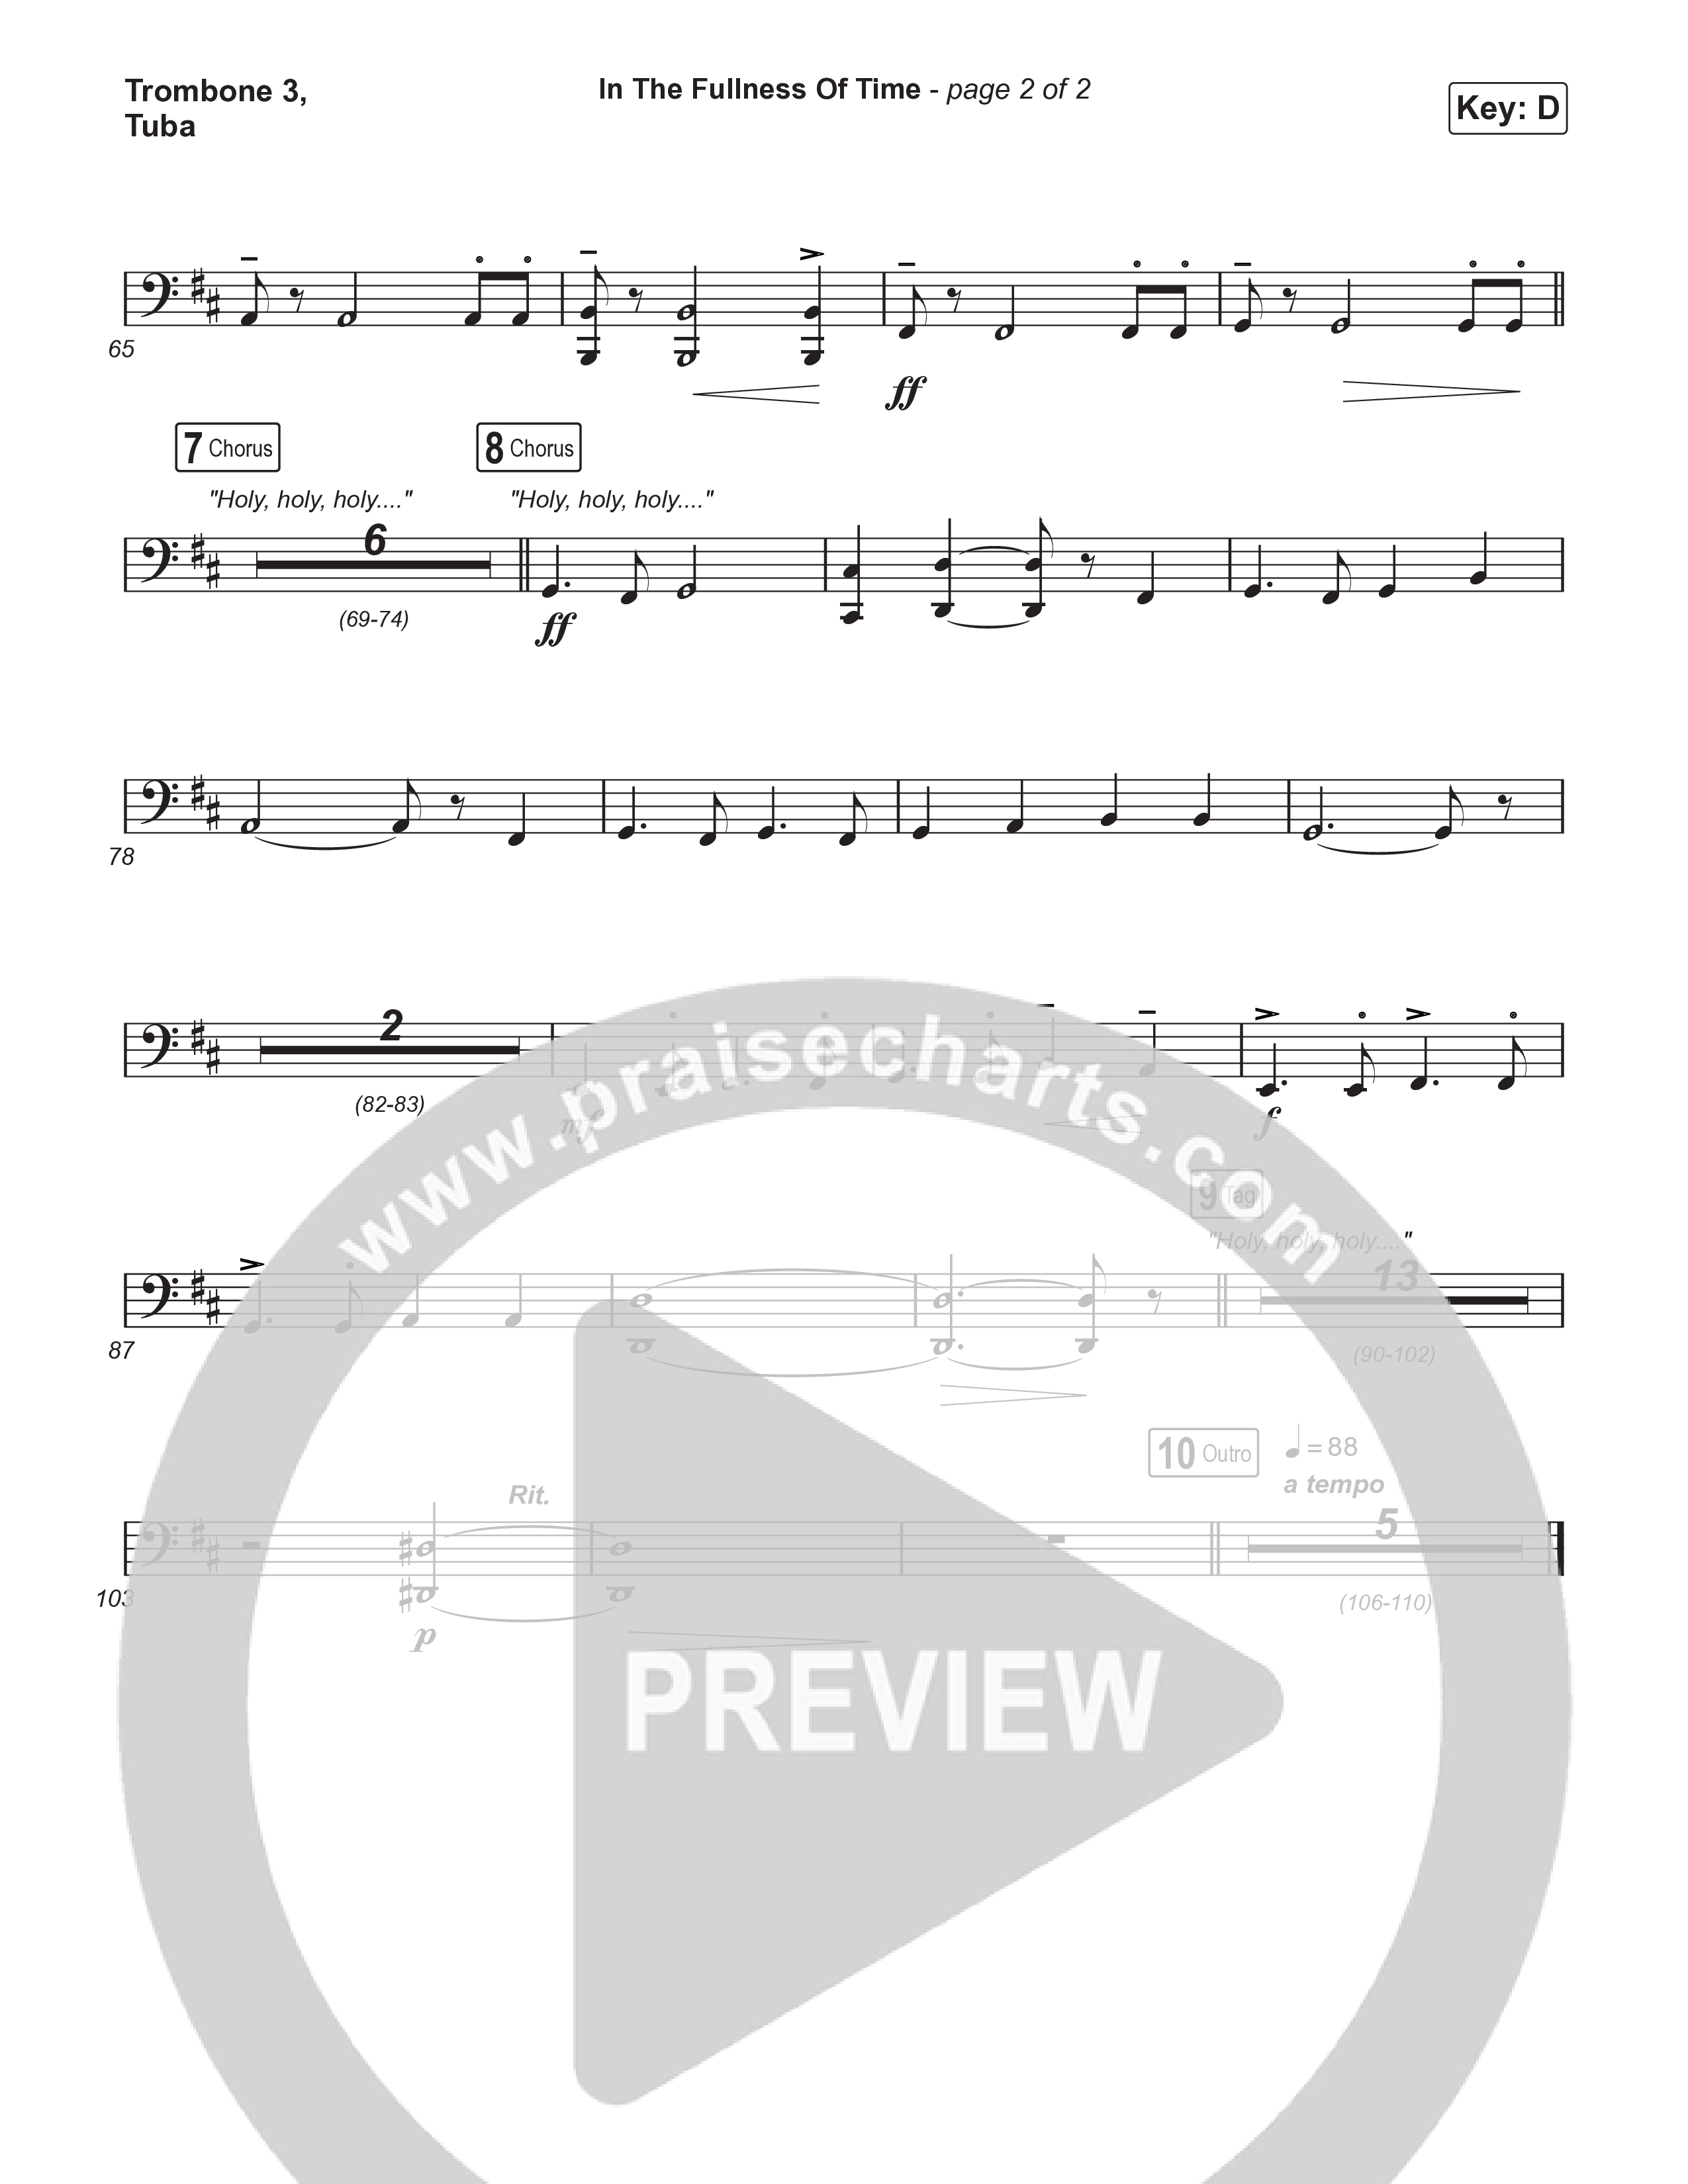 In The Fullness Of Time (Choral Anthem SATB) Trombone 3/Tuba (Matt Papa / Matt Boswell / Arr. Luke Gambill)